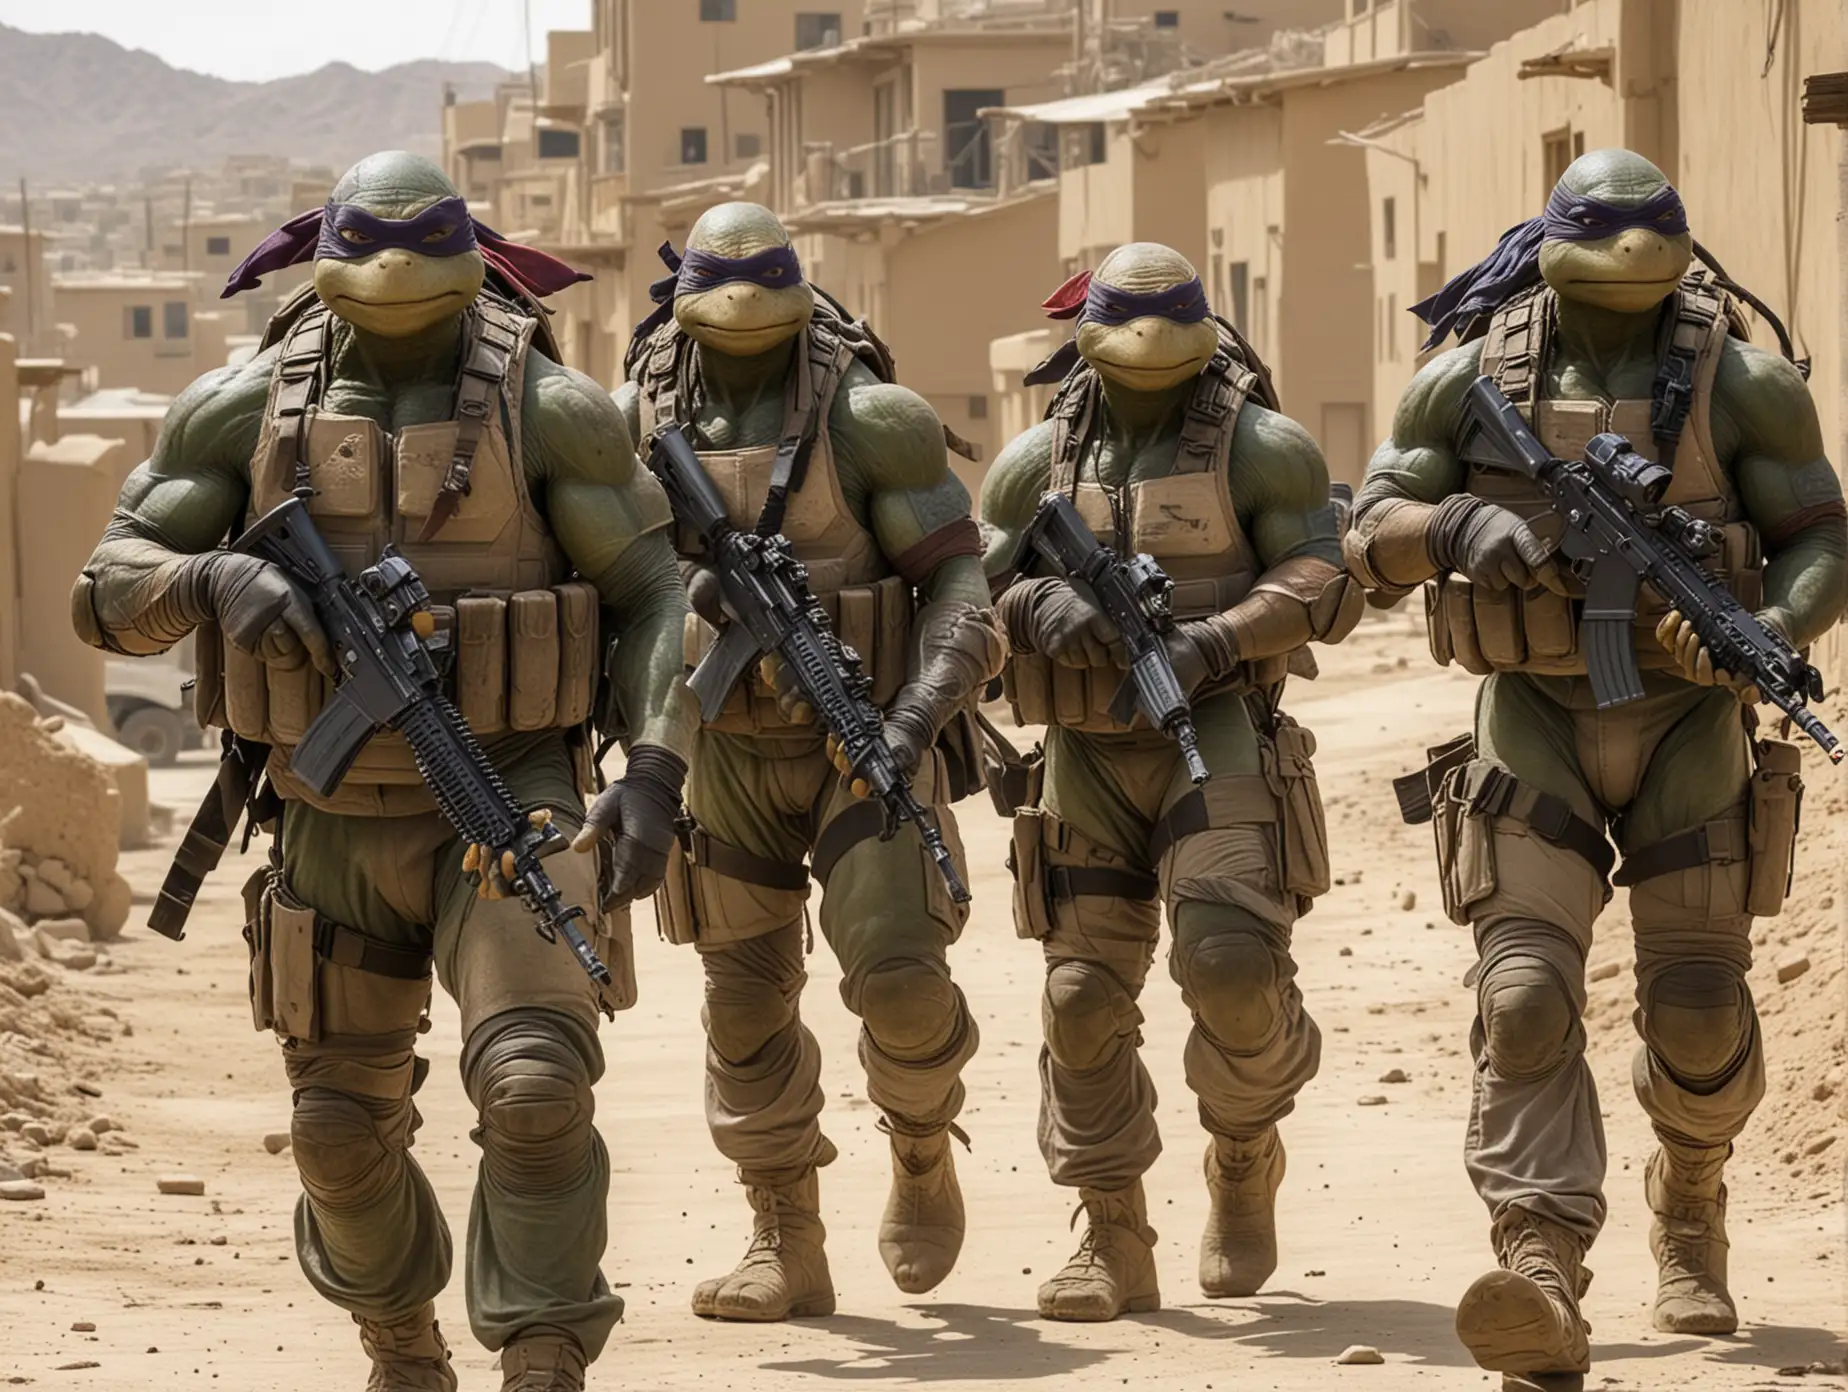 Ninja Turtles Navy Seals Afghanistan Village Patrol